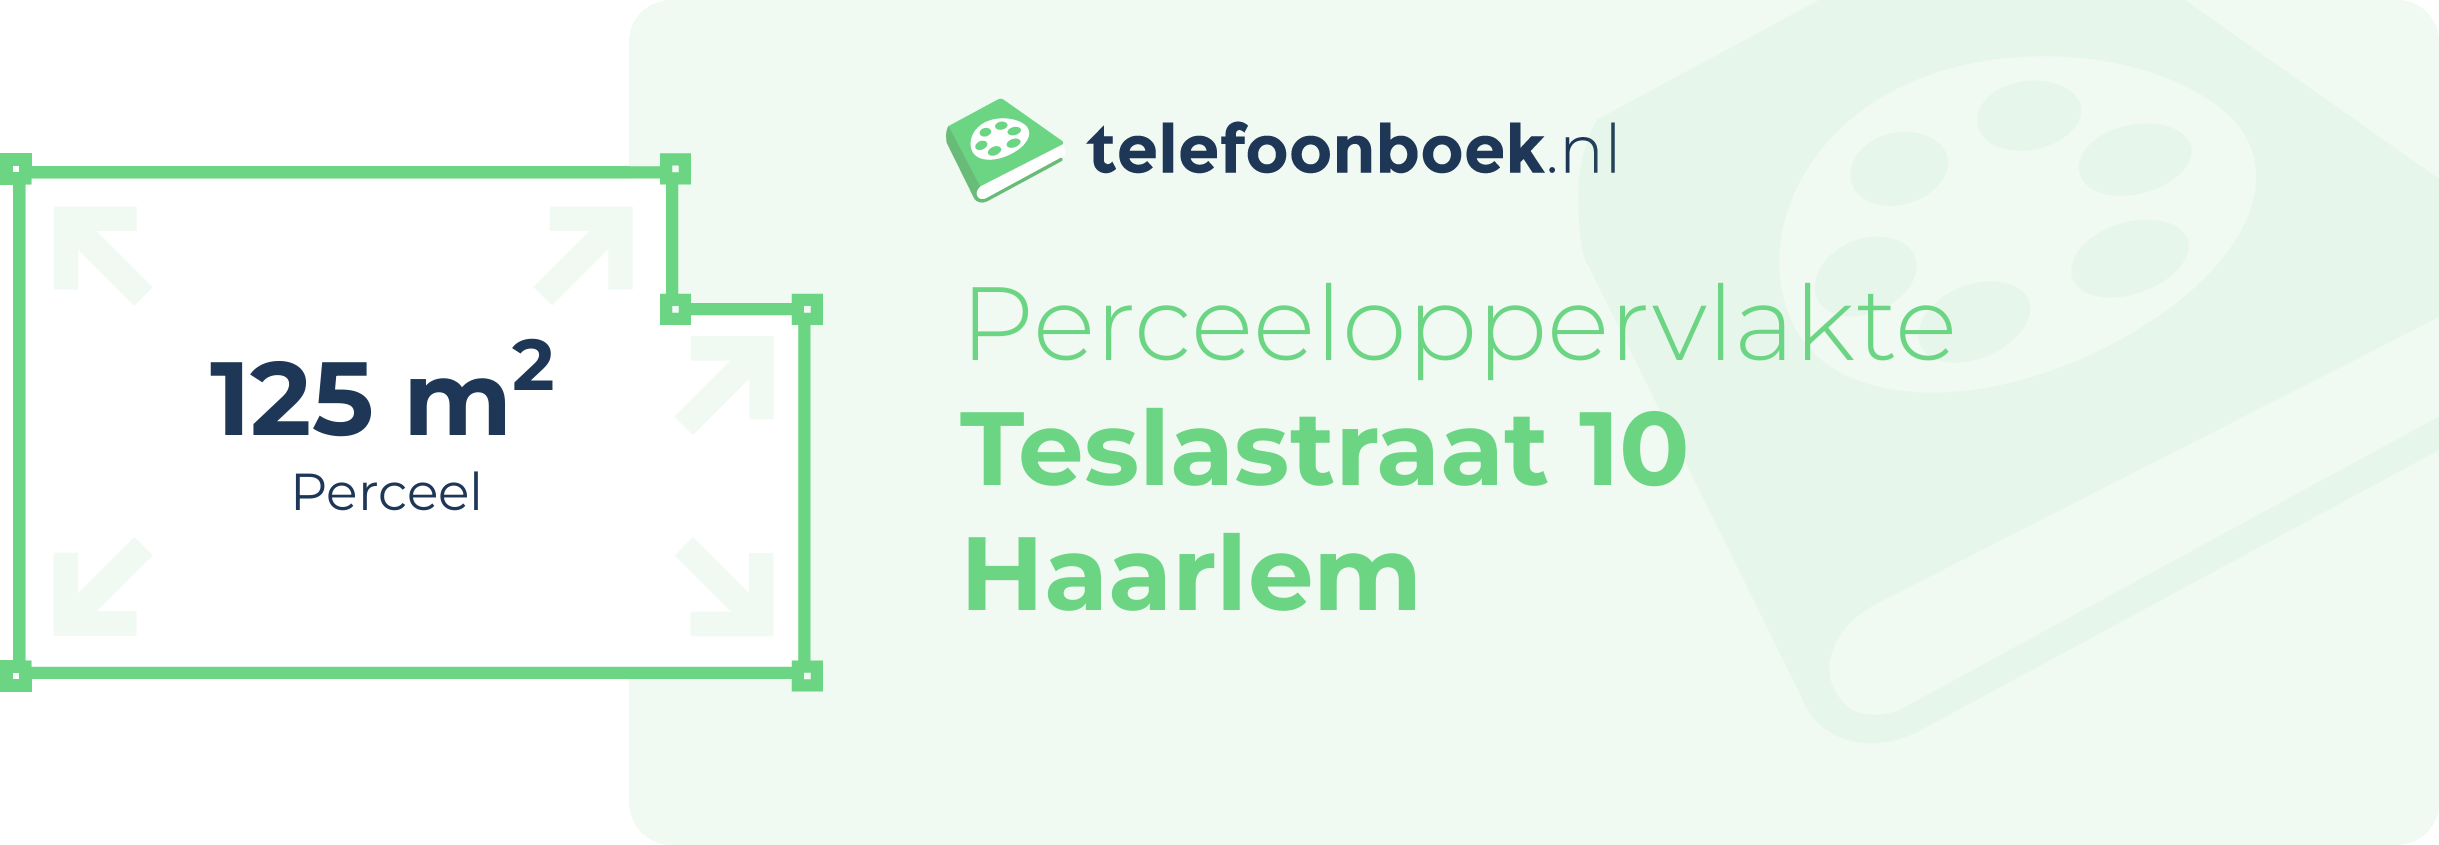 Perceeloppervlakte Teslastraat 10 Haarlem